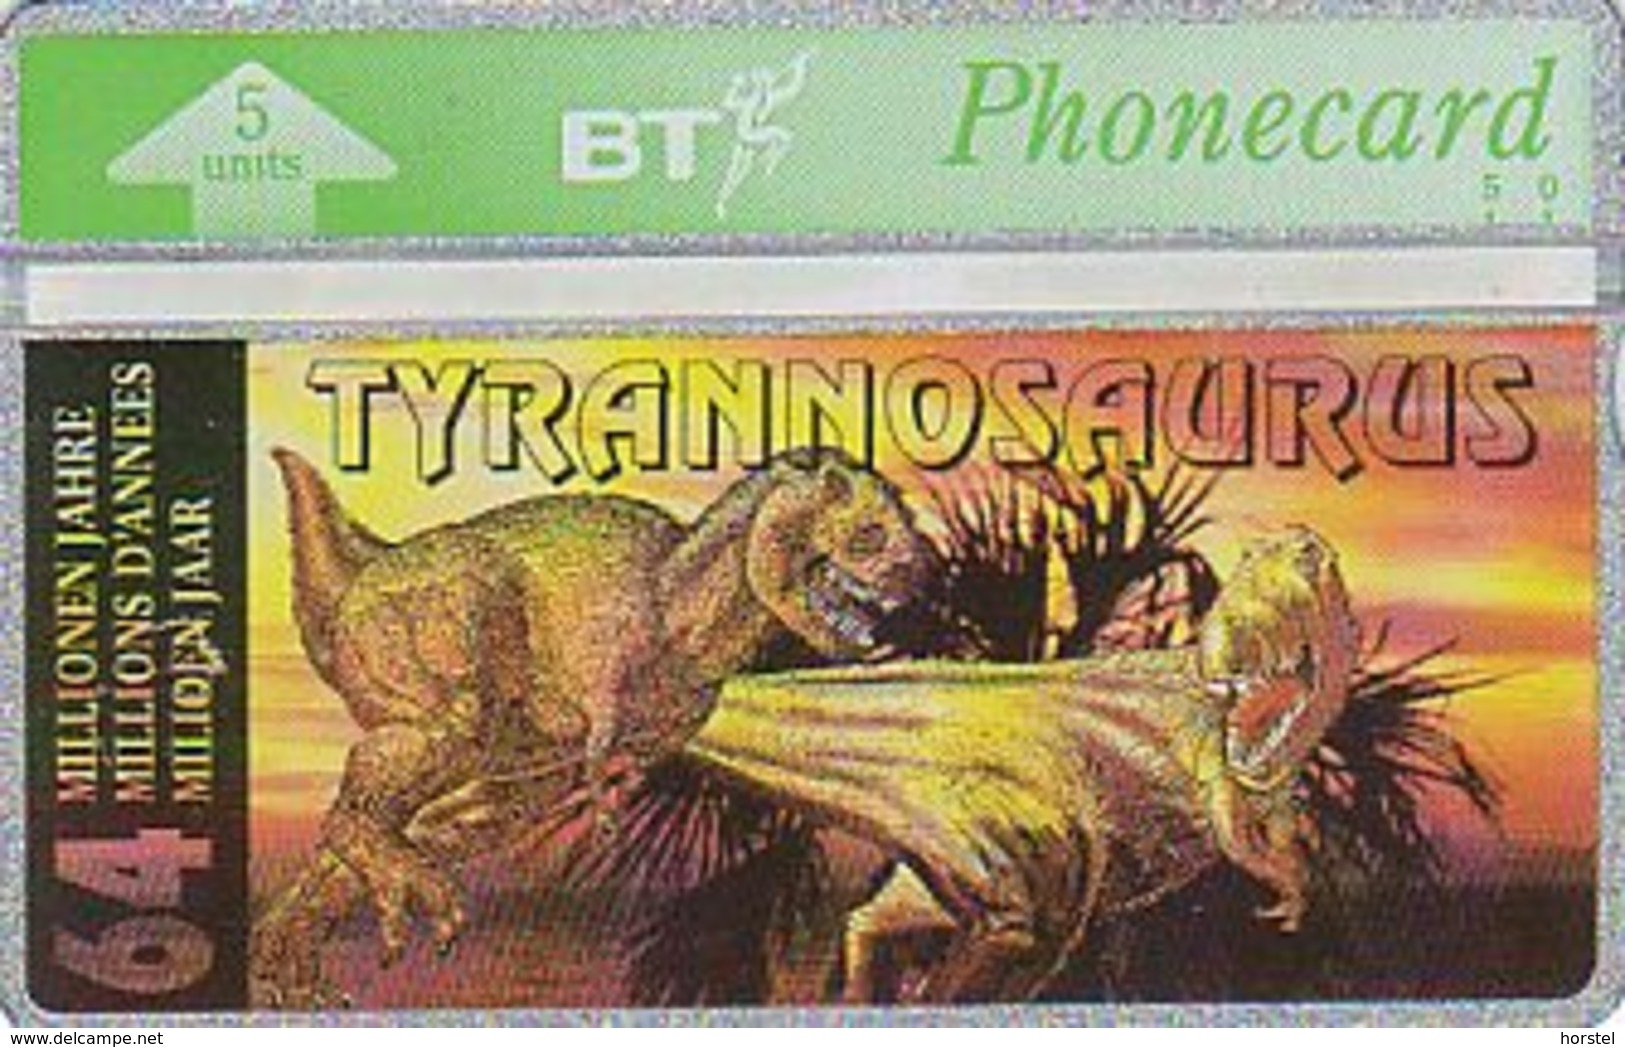 UK Bto 65 Dinosaur Series (8) Tyrannosaurus - 401D - BT Overseas Issues